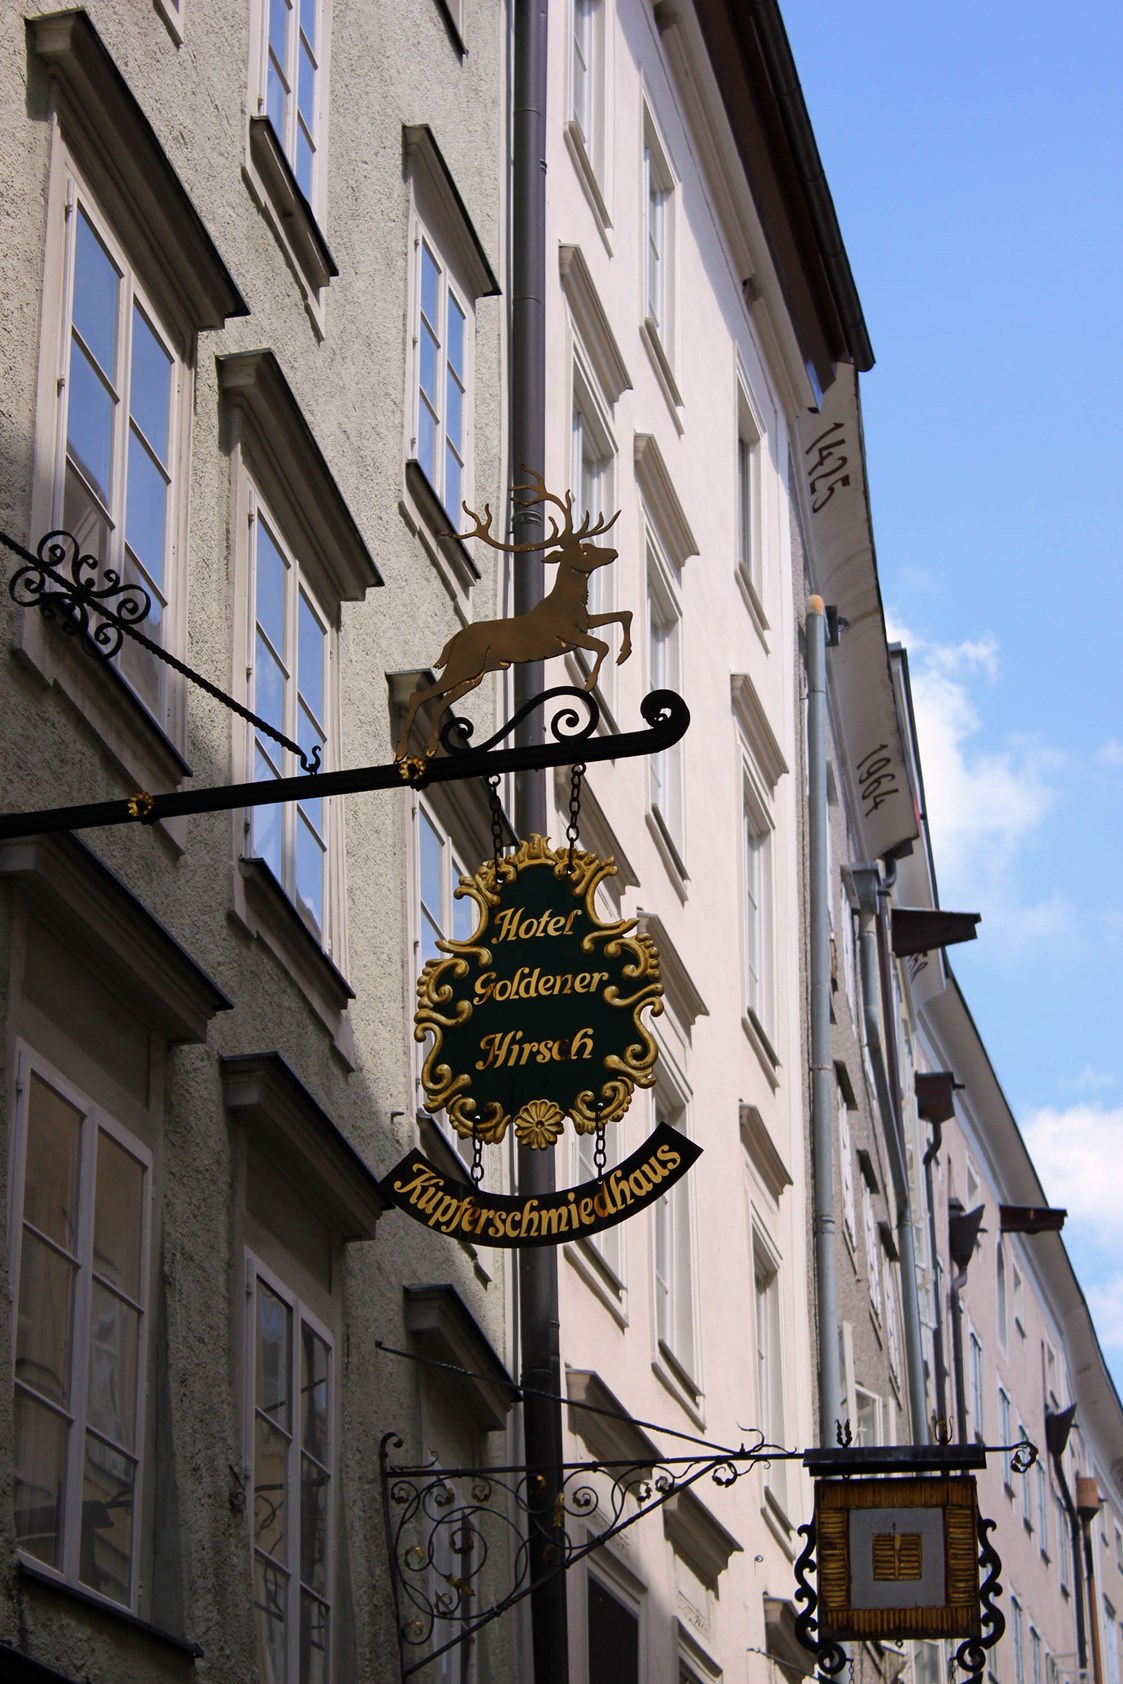 Restaurant: Goldener Hirsch